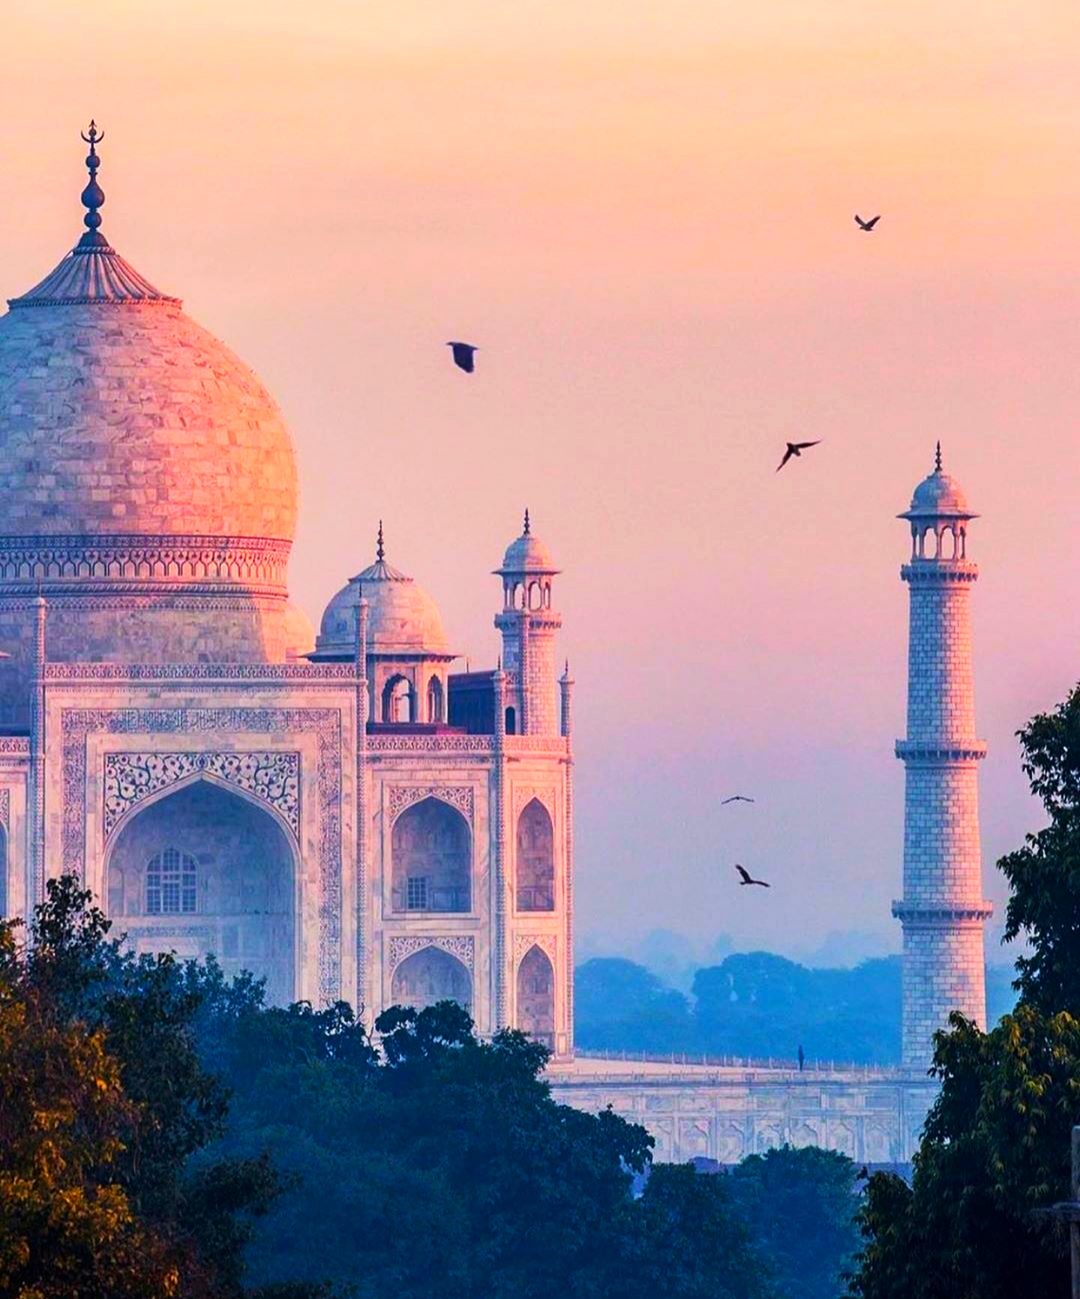 30 Best Beautiful Taj Mahal Photos Of  2020  | Taj Mahal Photo Gallery India | Taj Mahal HD Images